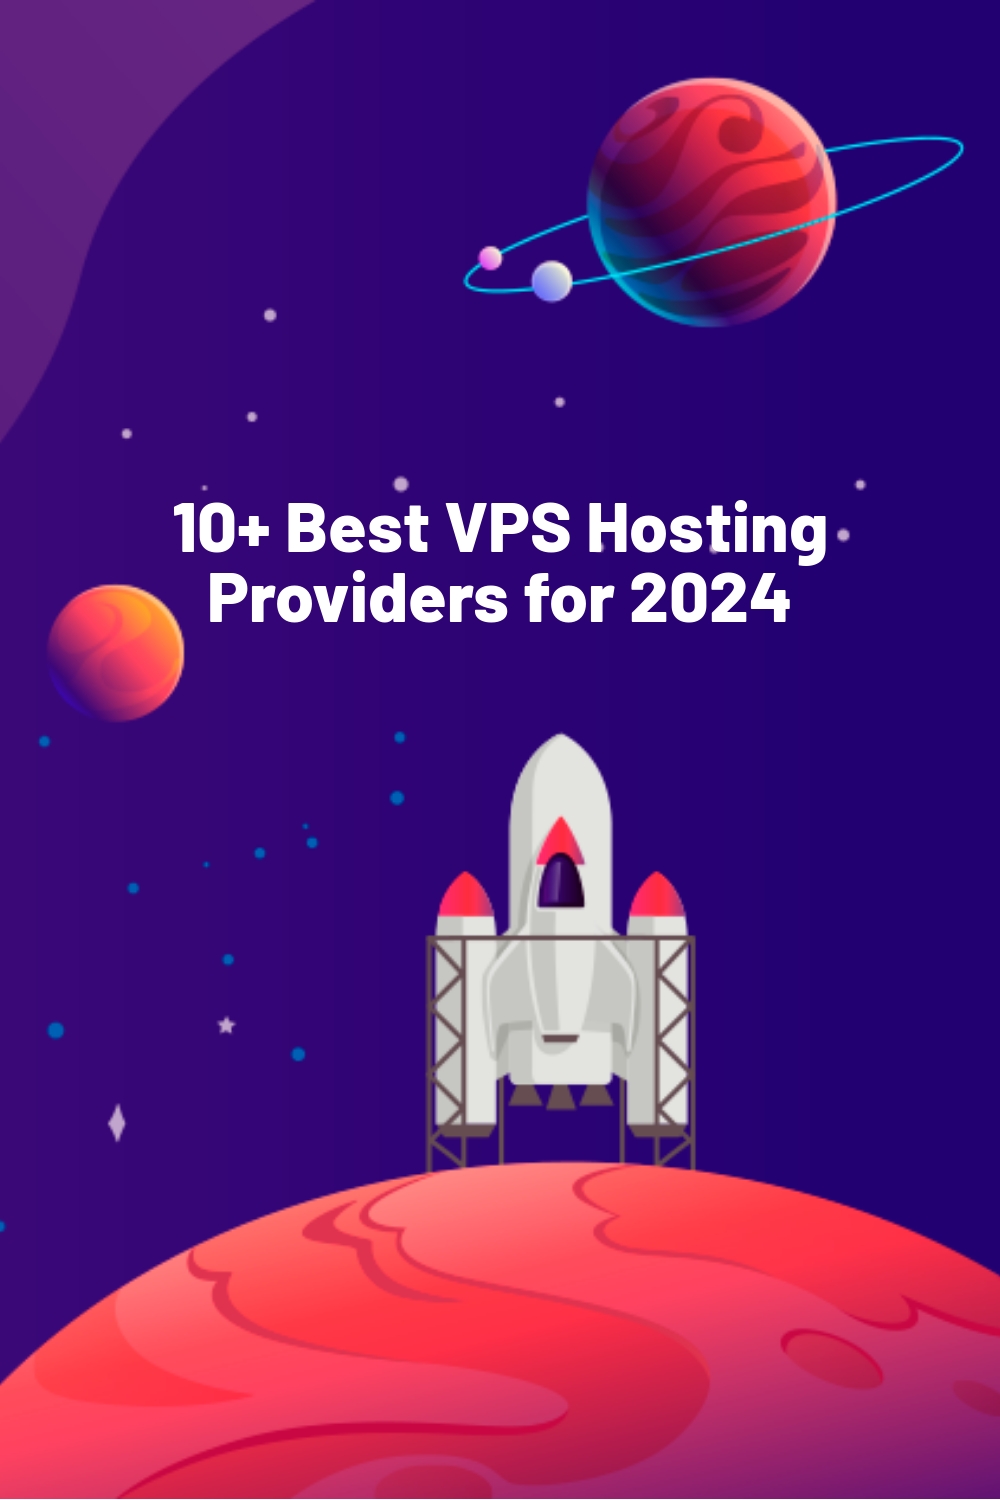 10+ Best VPS Hosting Providers for 2024